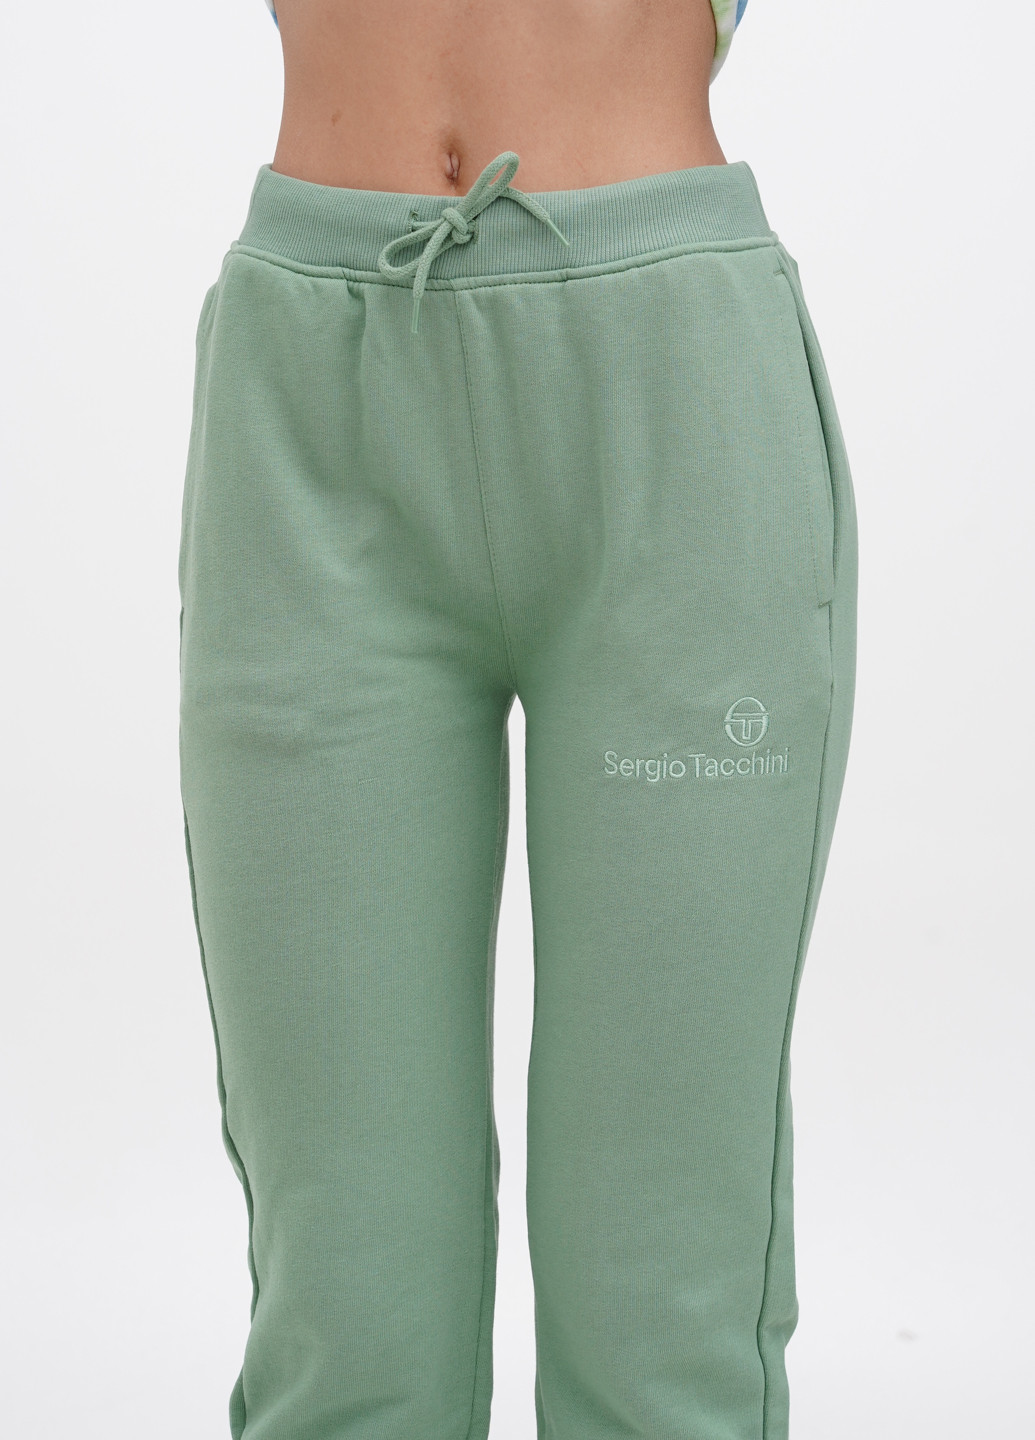 Светло-зеленые спортивные демисезонные джоггеры брюки Sergio Tacchini